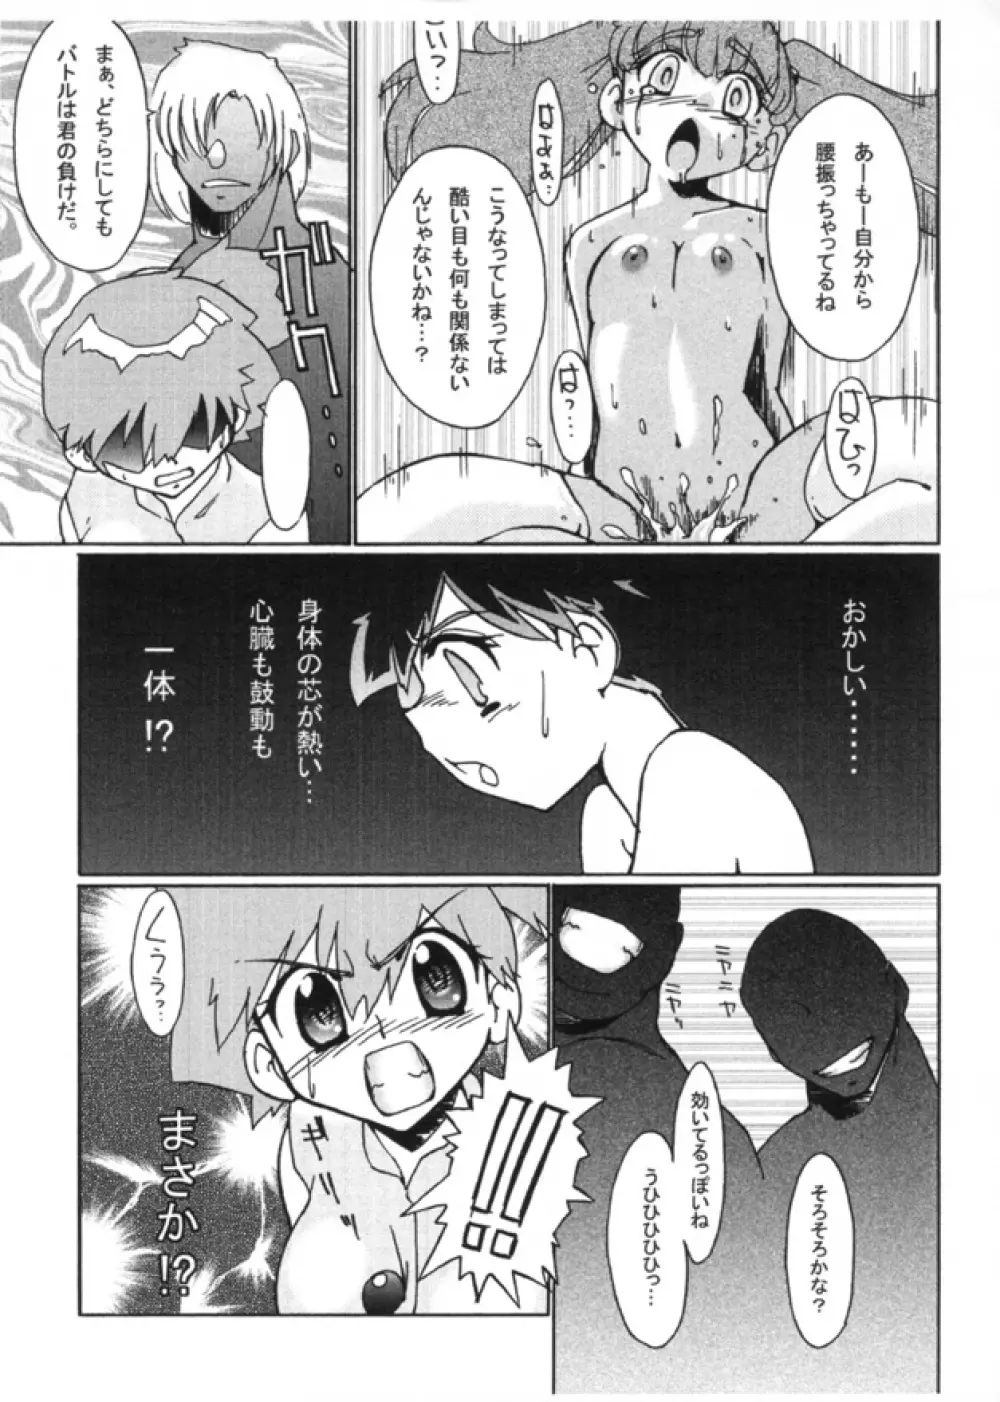 KASUMIX XPLOSION Kasumi Comic part5 48ページ